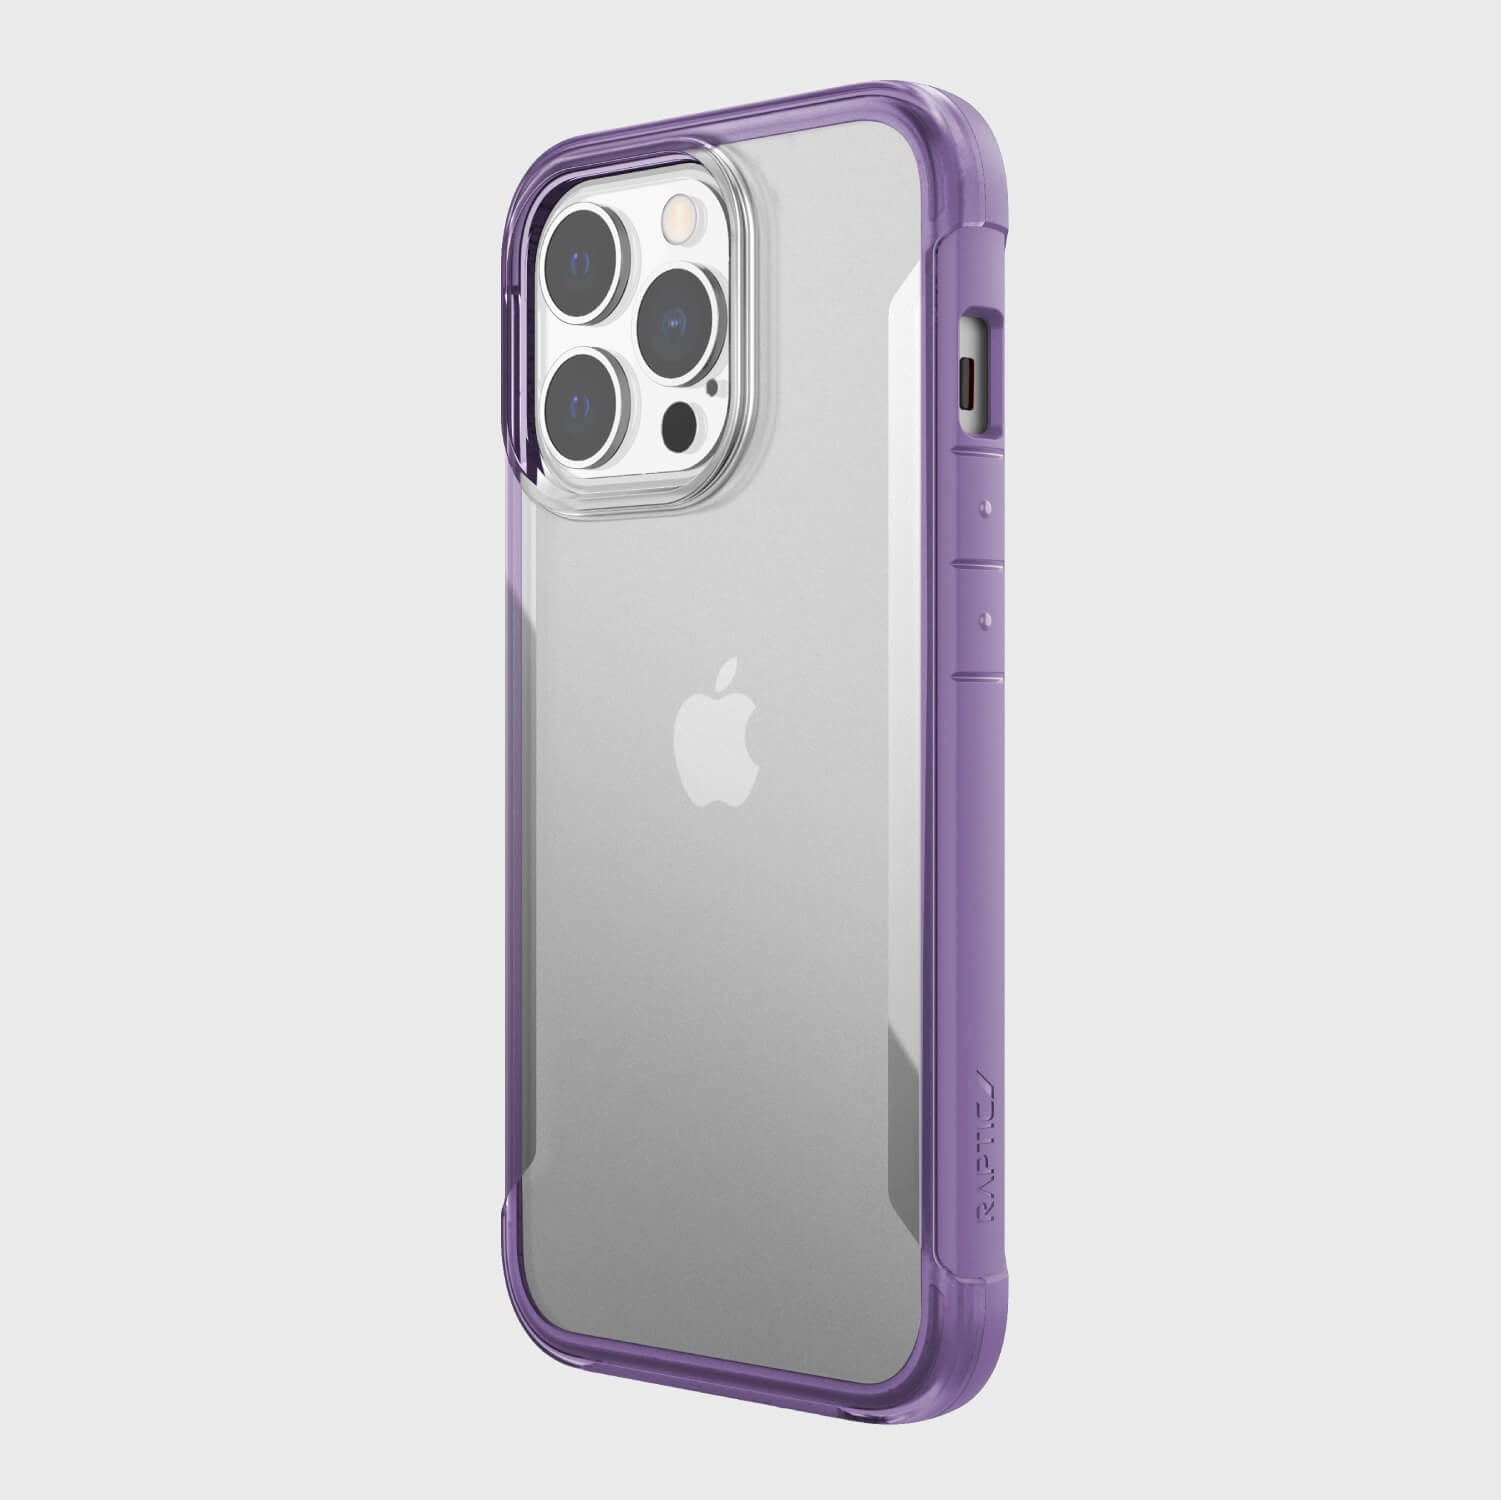 Showing an iPhone 13 Pro in a purple Raptic Terrain case